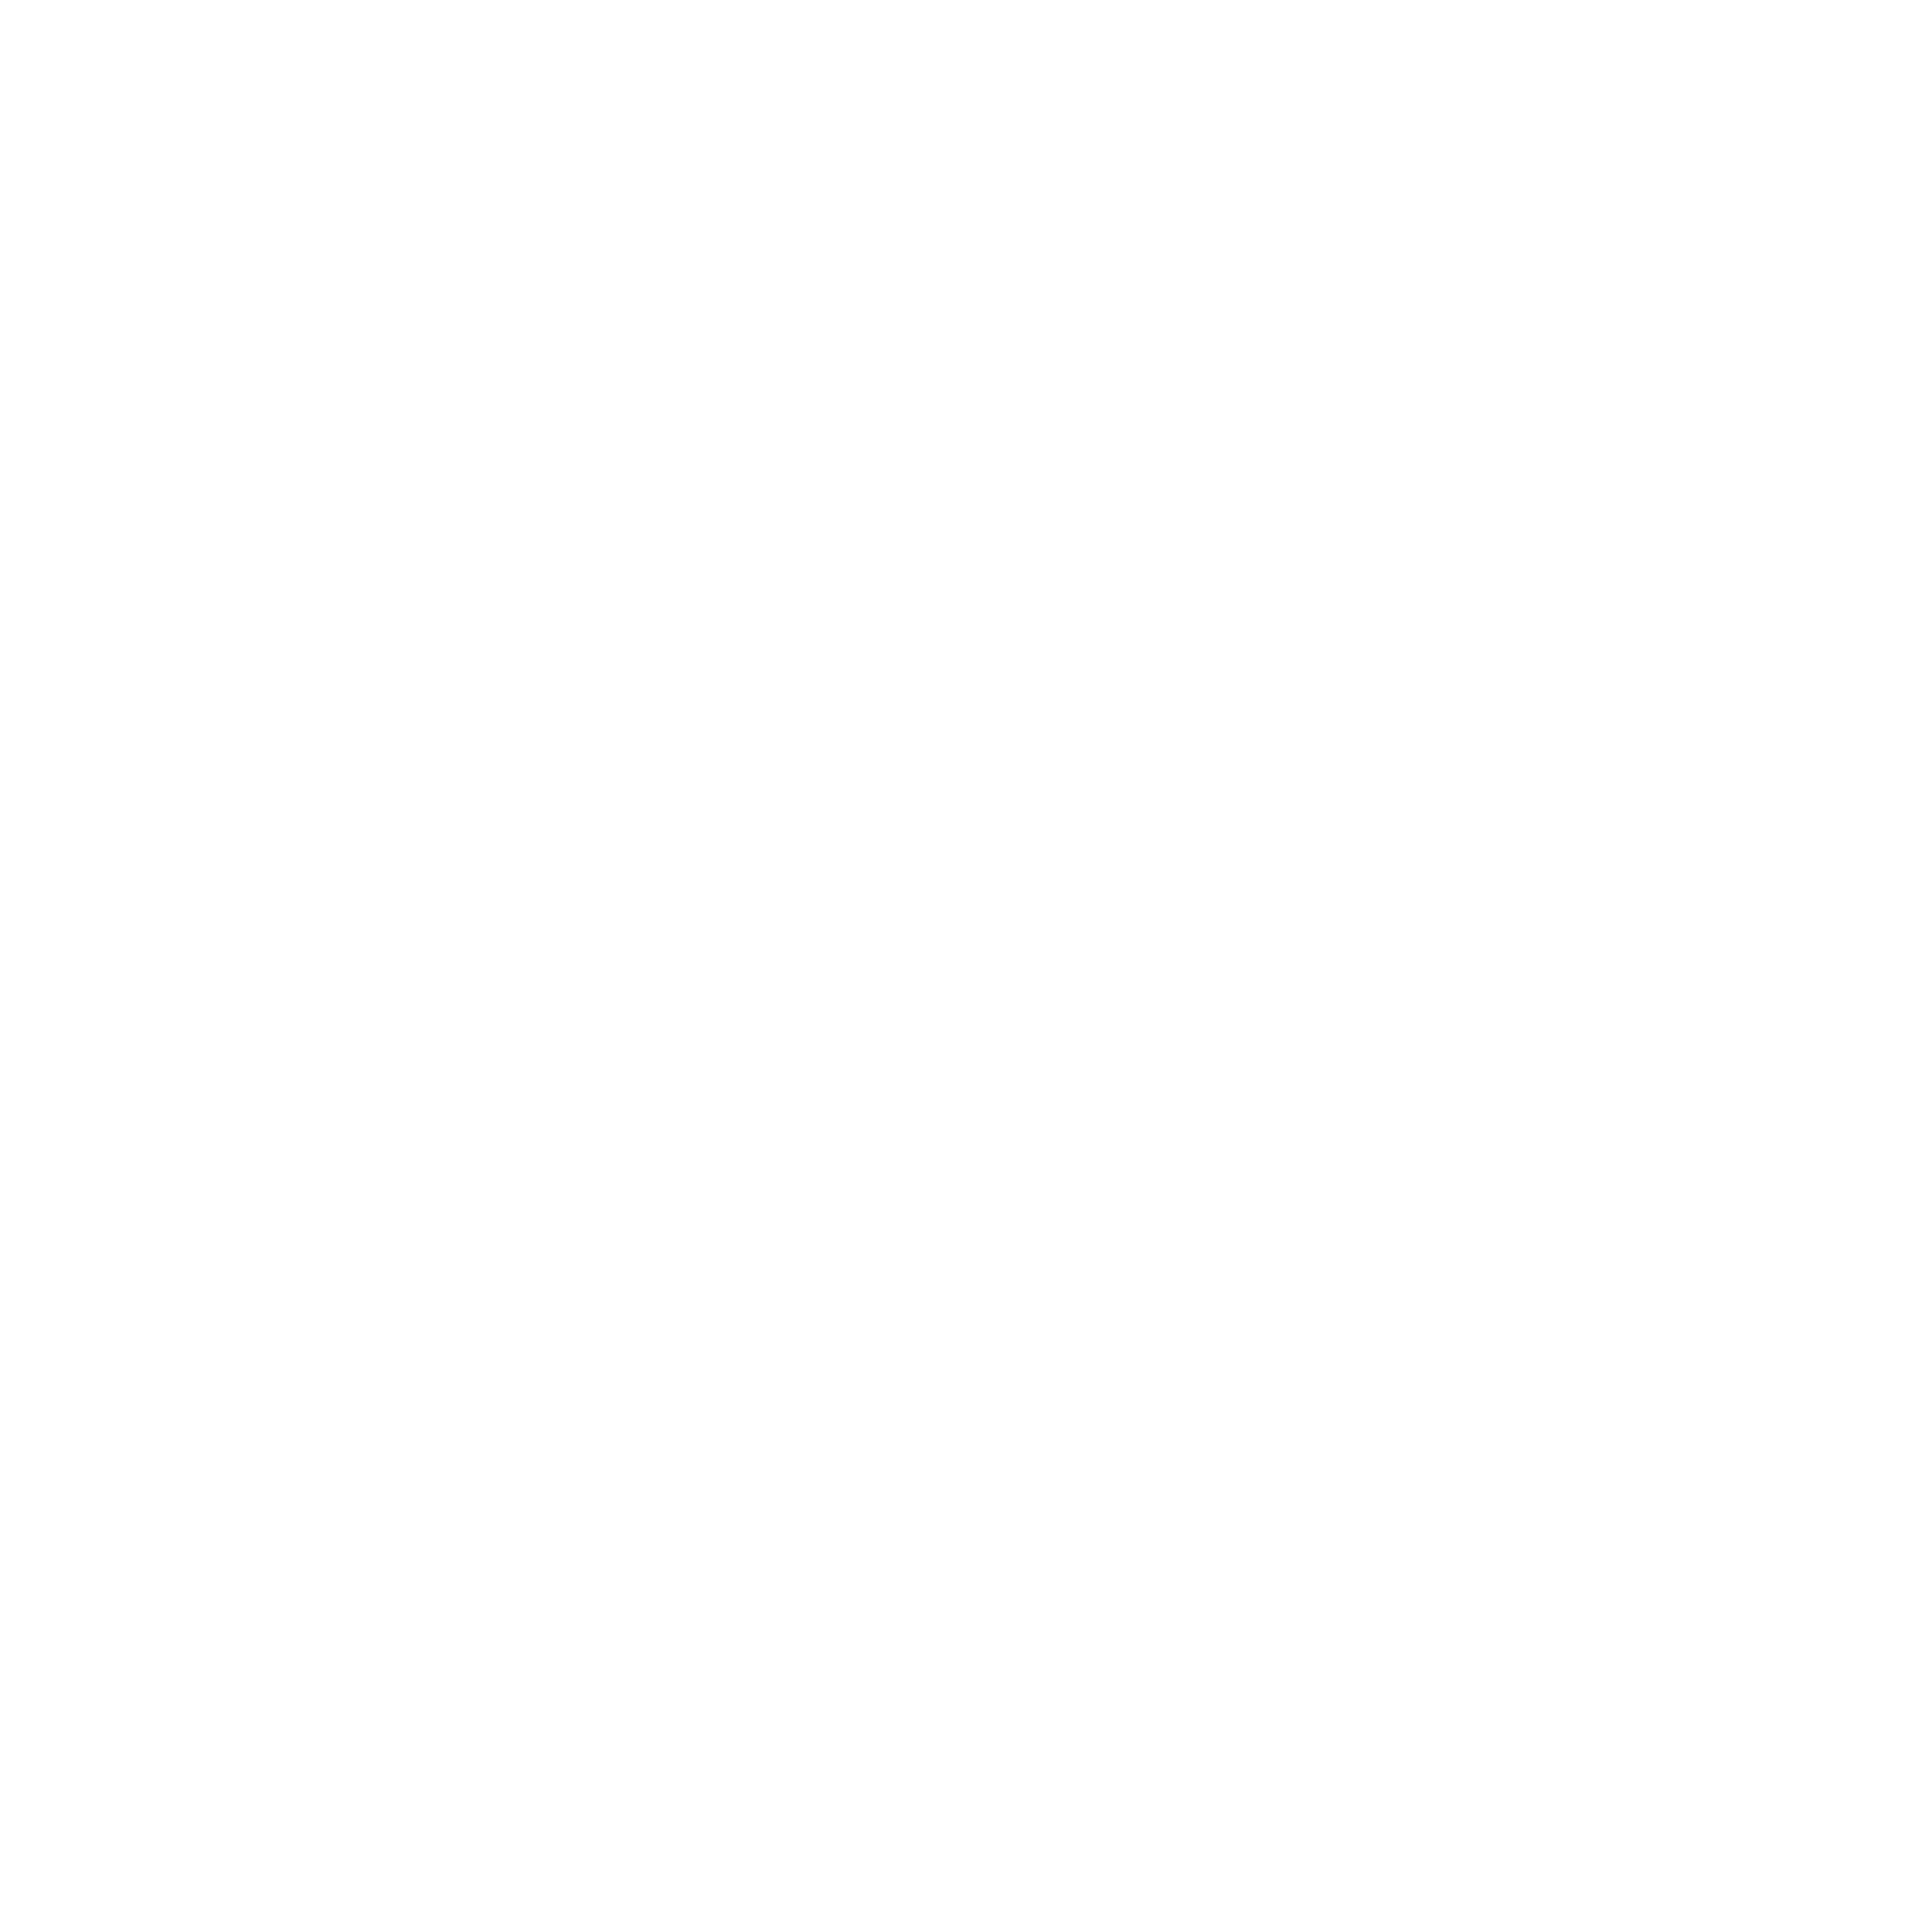 Flex-a-lite Logo - Flex a lite Logo PNG Transparent & SVG Vector - Freebie Supply